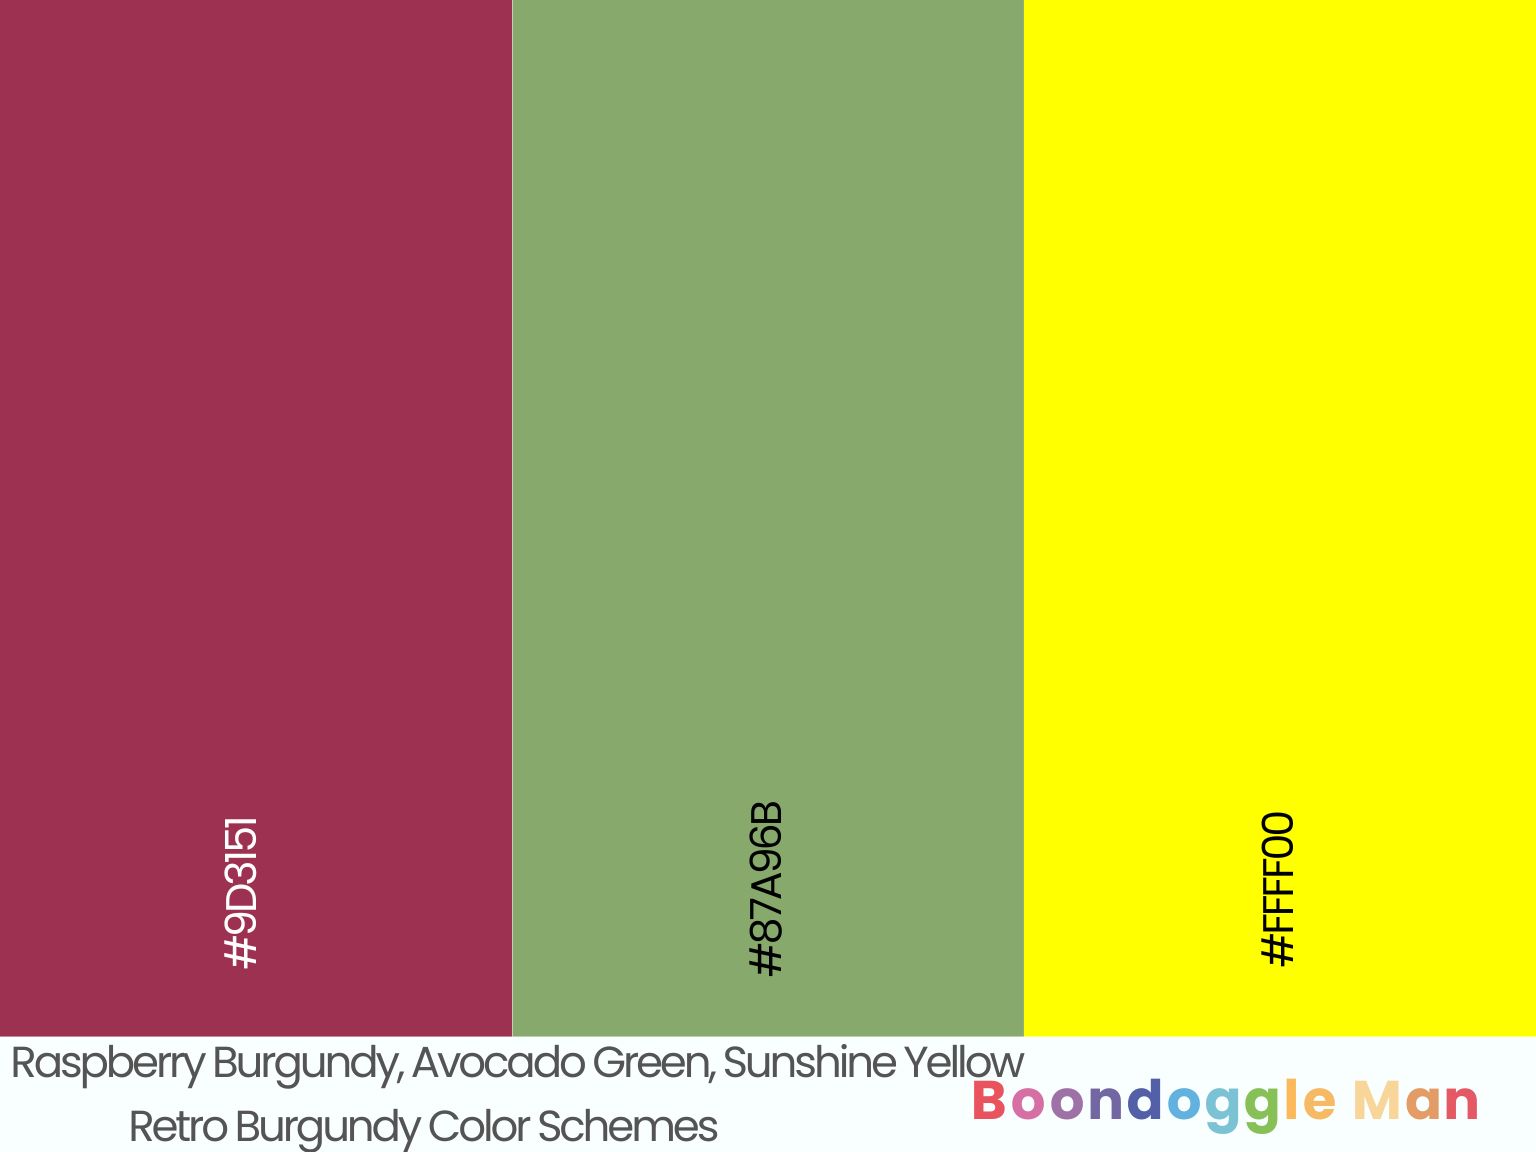 Raspberry Burgundy, Avocado Green, Sunshine Yellow